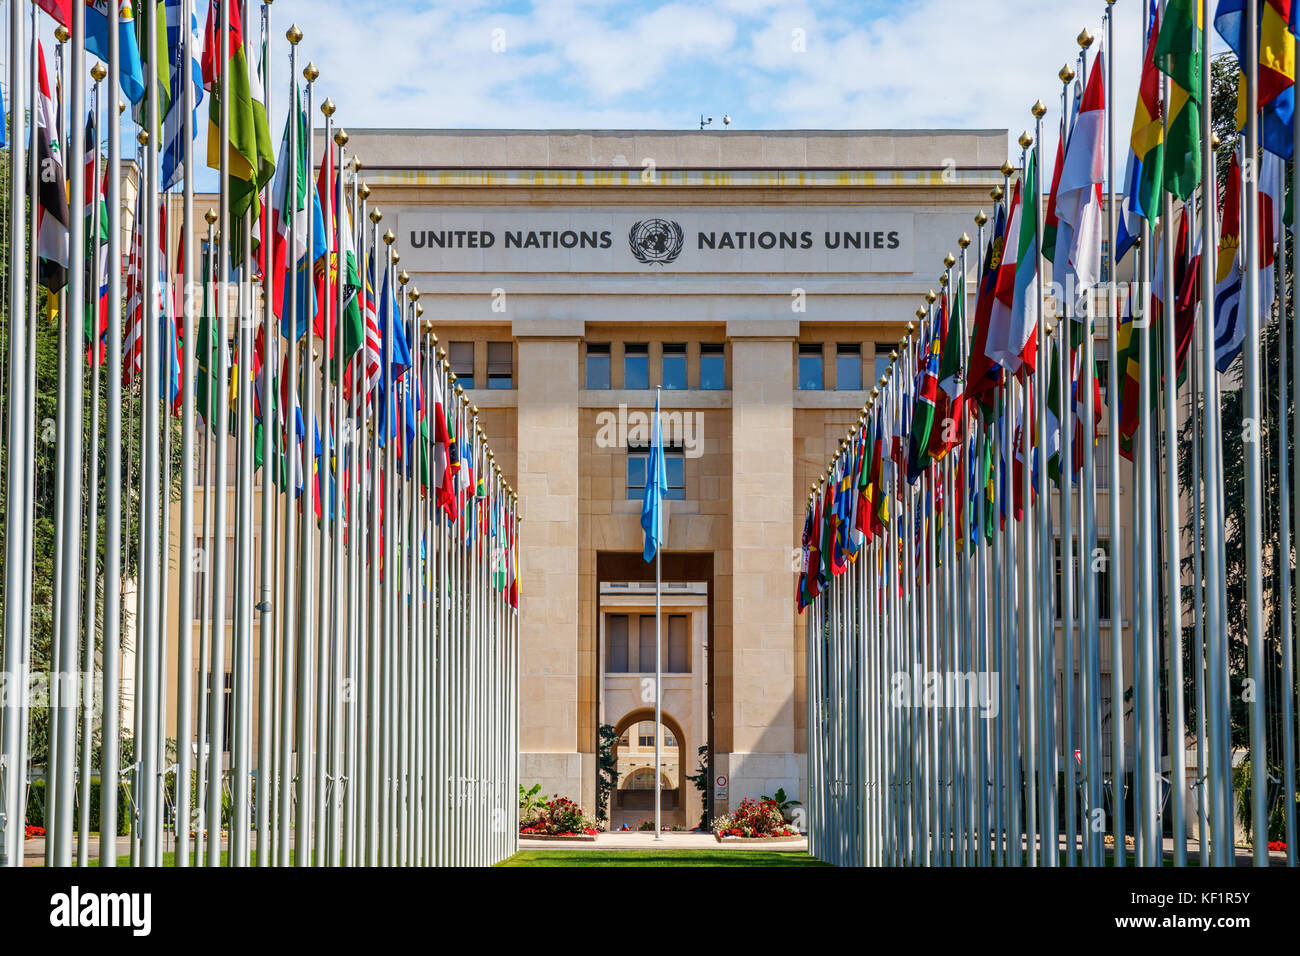 'L'Allée des Nations Unies" (Avenue des Nations Unies) du Palais des Nations Unies de Genève, avec les drapeaux des pays membres. Genève, Suisse. Banque D'Images